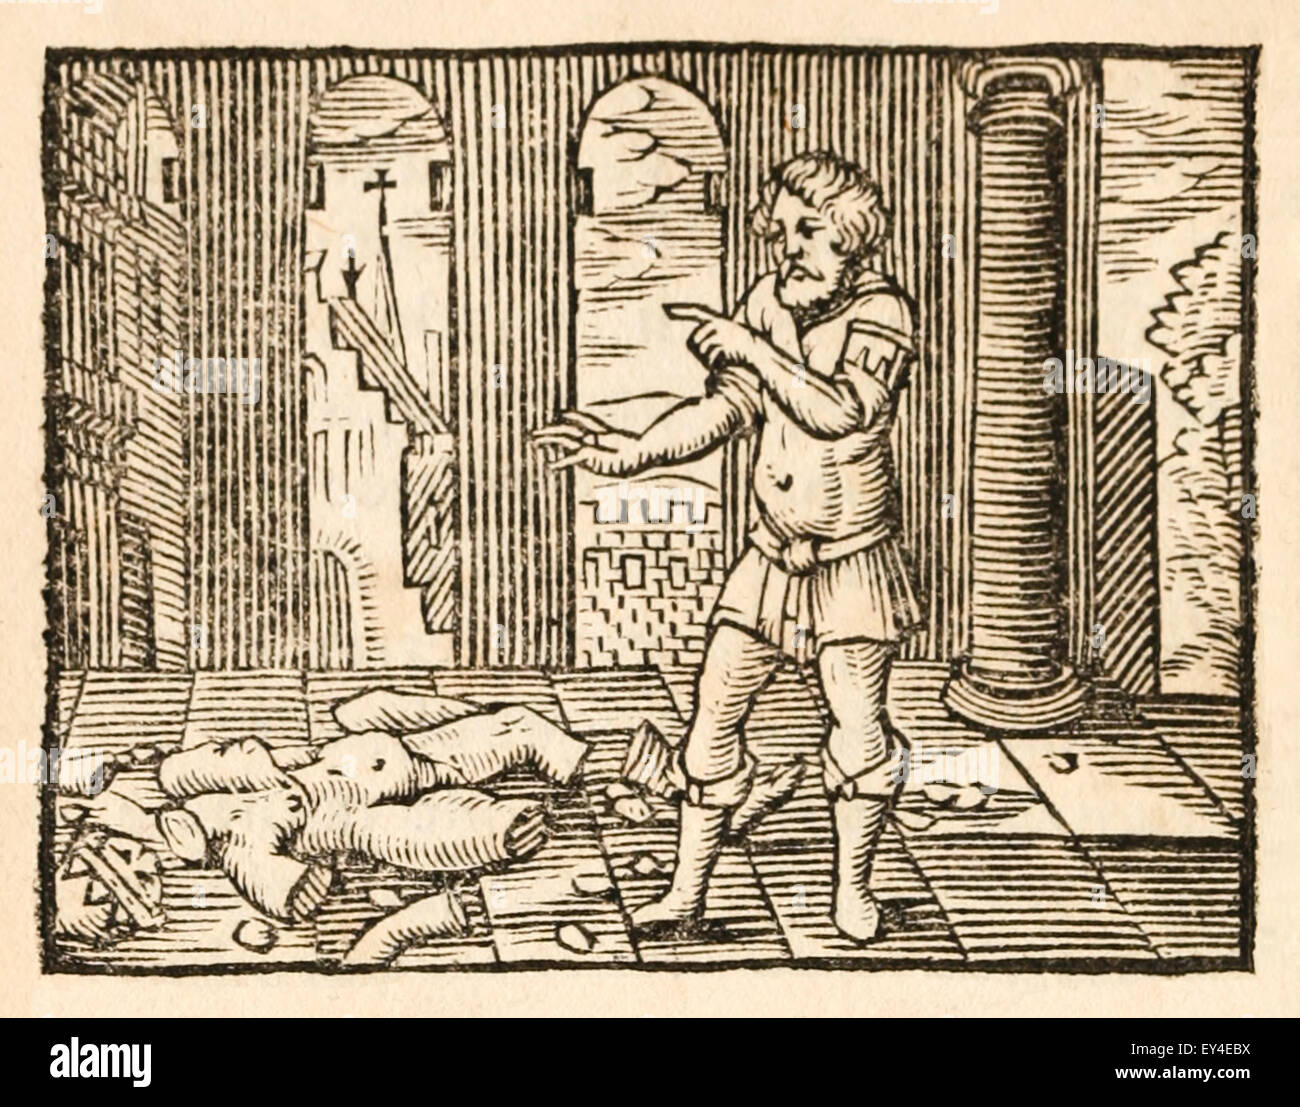 "Die Satzung des Hermes und der Schatz" Fabel von Aesop (ca. 600). 17. Jahrhundert Holzschnitt Drucken zur Veranschaulichung Aesop Fabeln. Siehe Beschreibung für mehr Informationen. Stockfoto